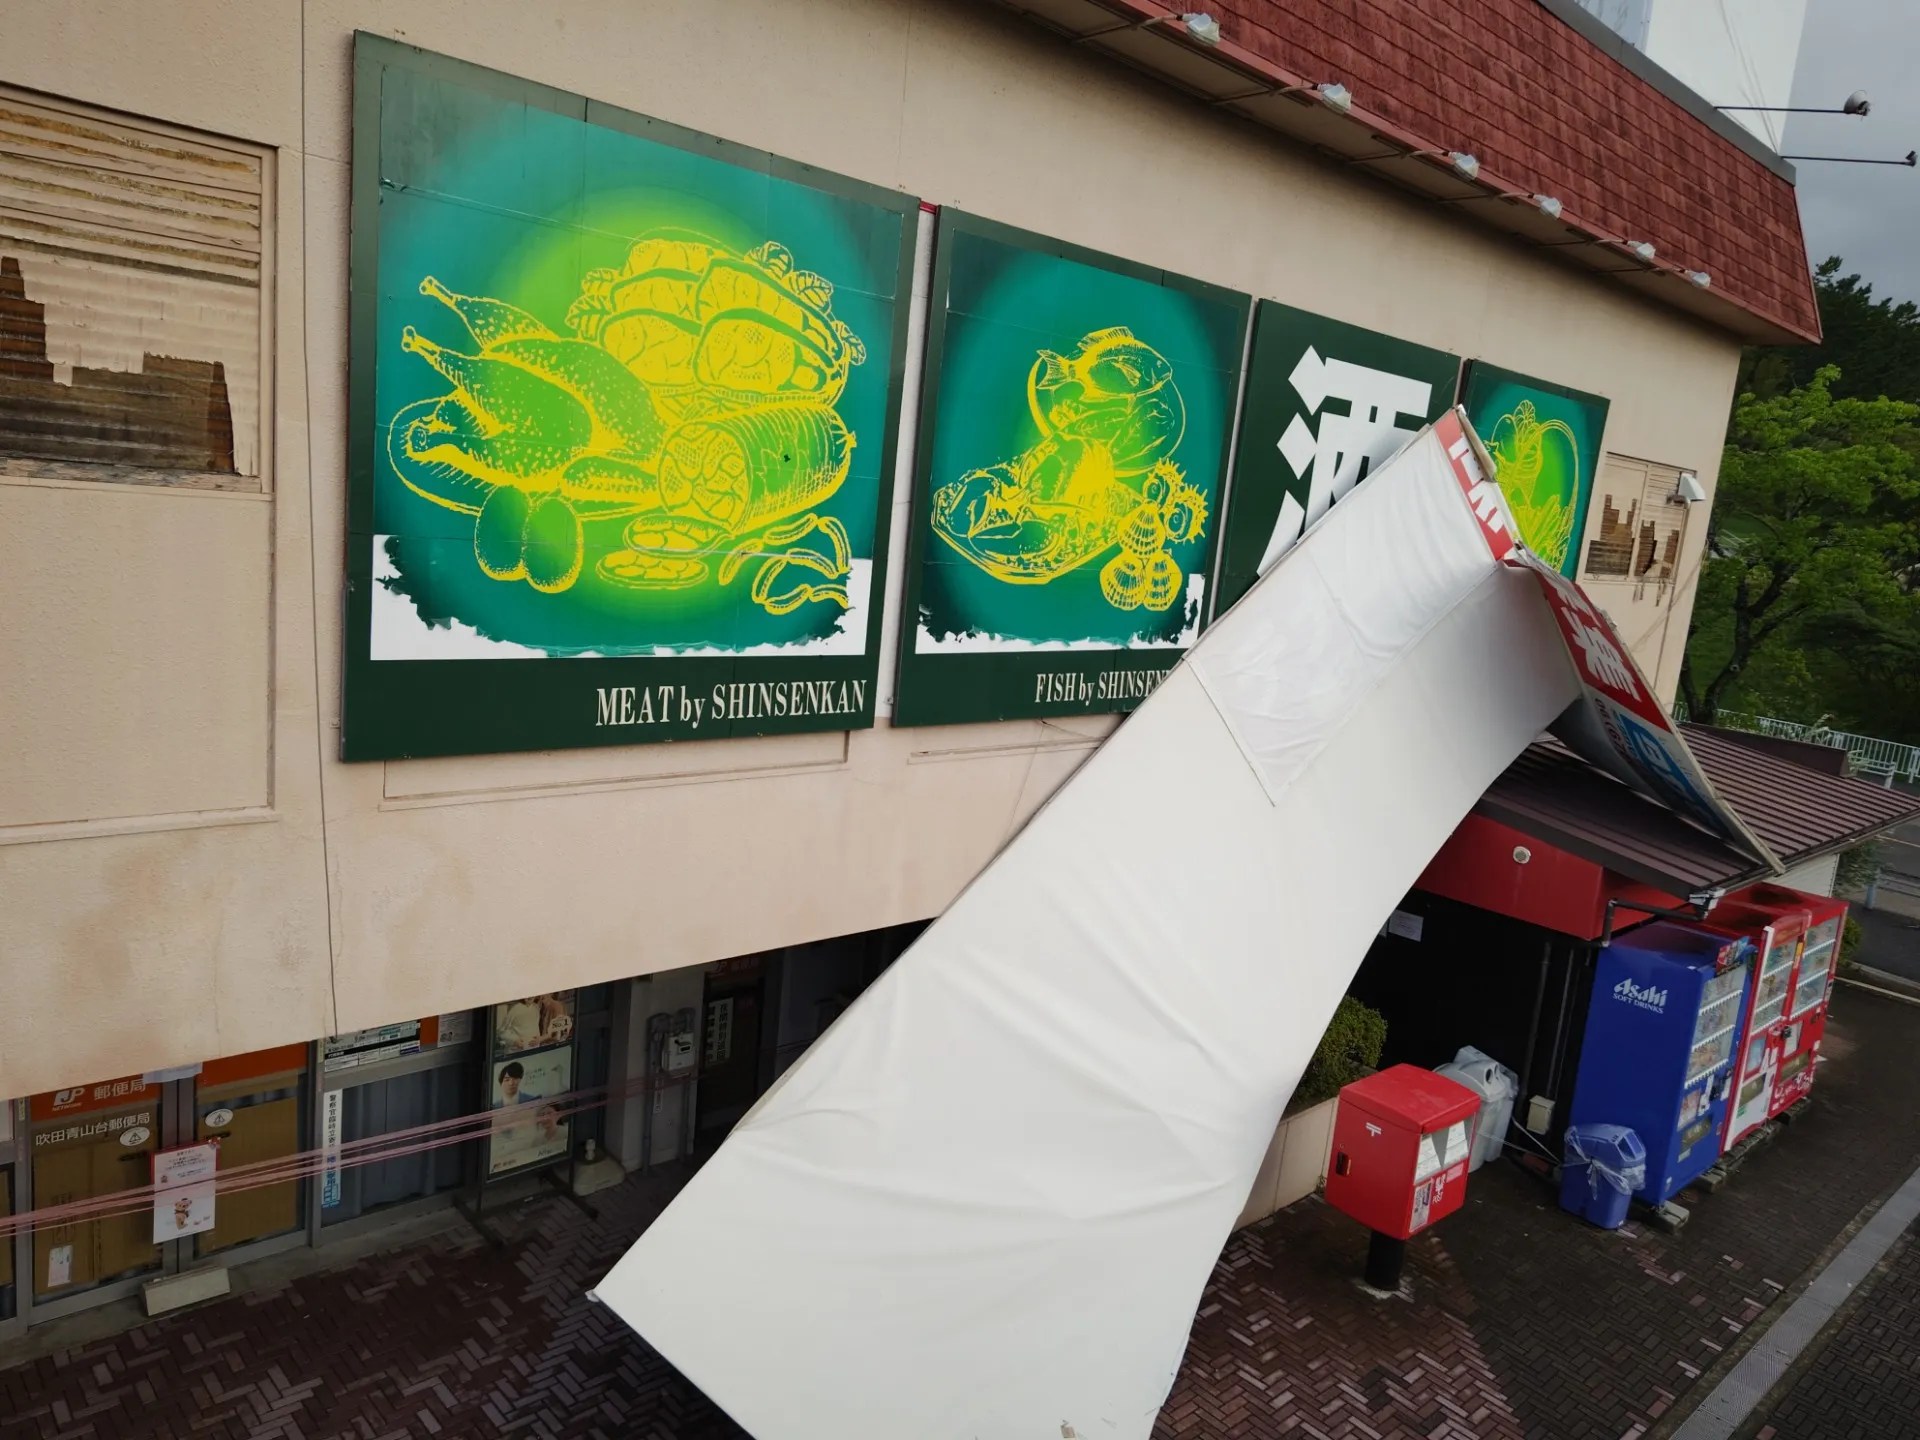 台風7号の影響・・・事業所の側面看板が崩落